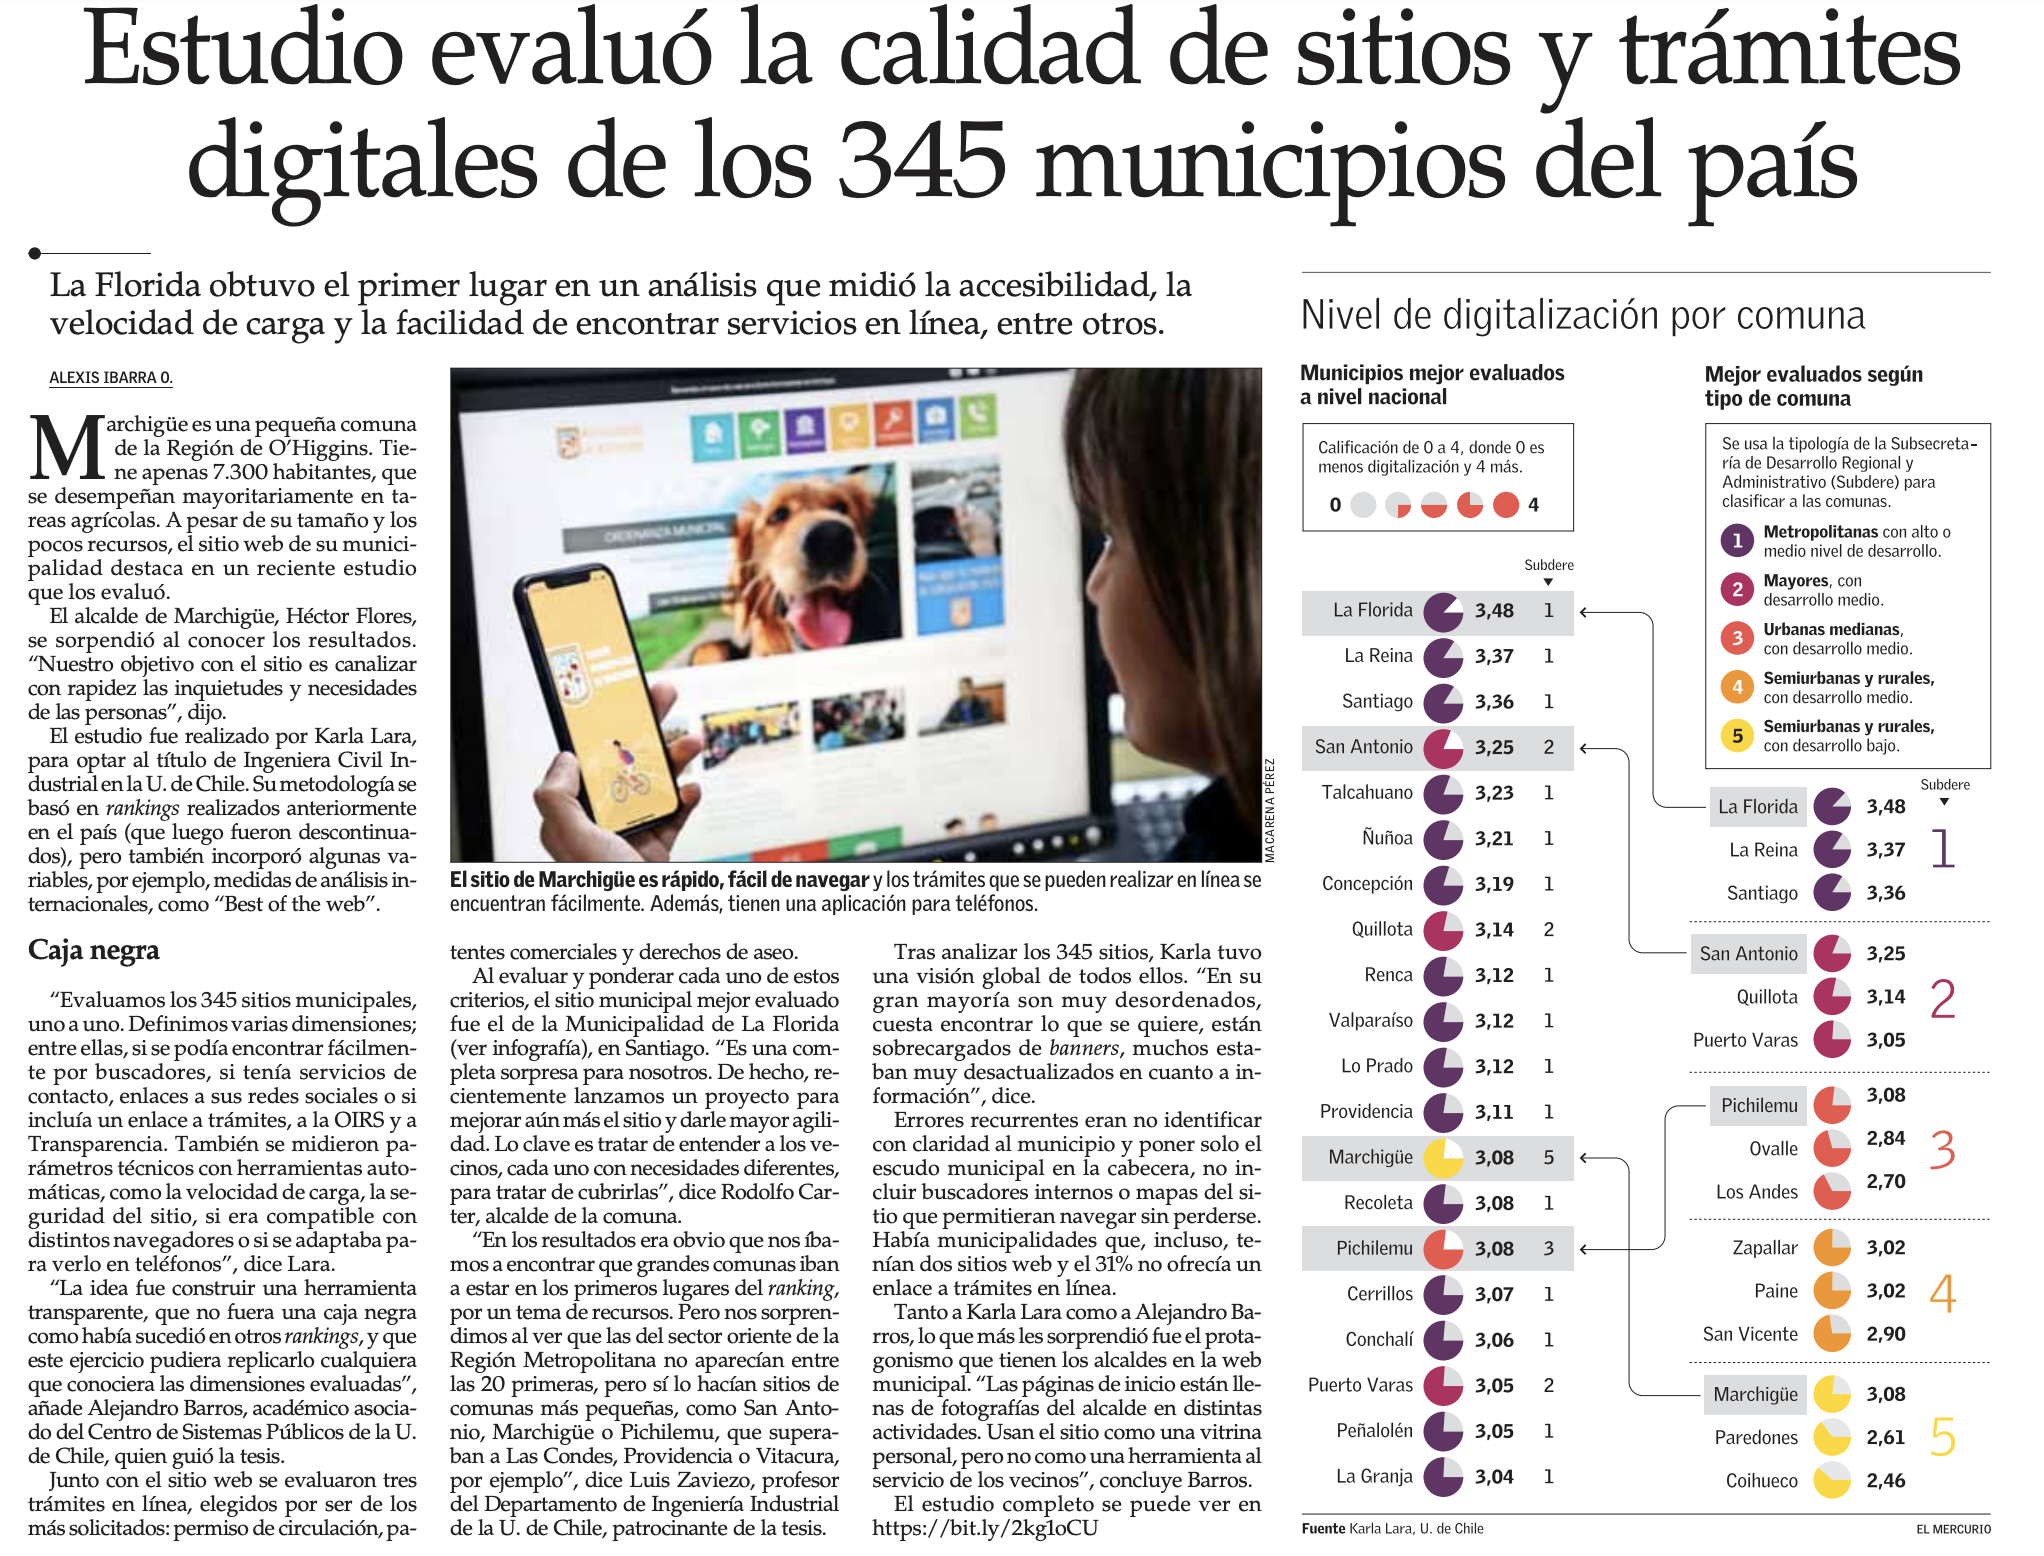 Articulo de prensa (El Mercurio) 2019